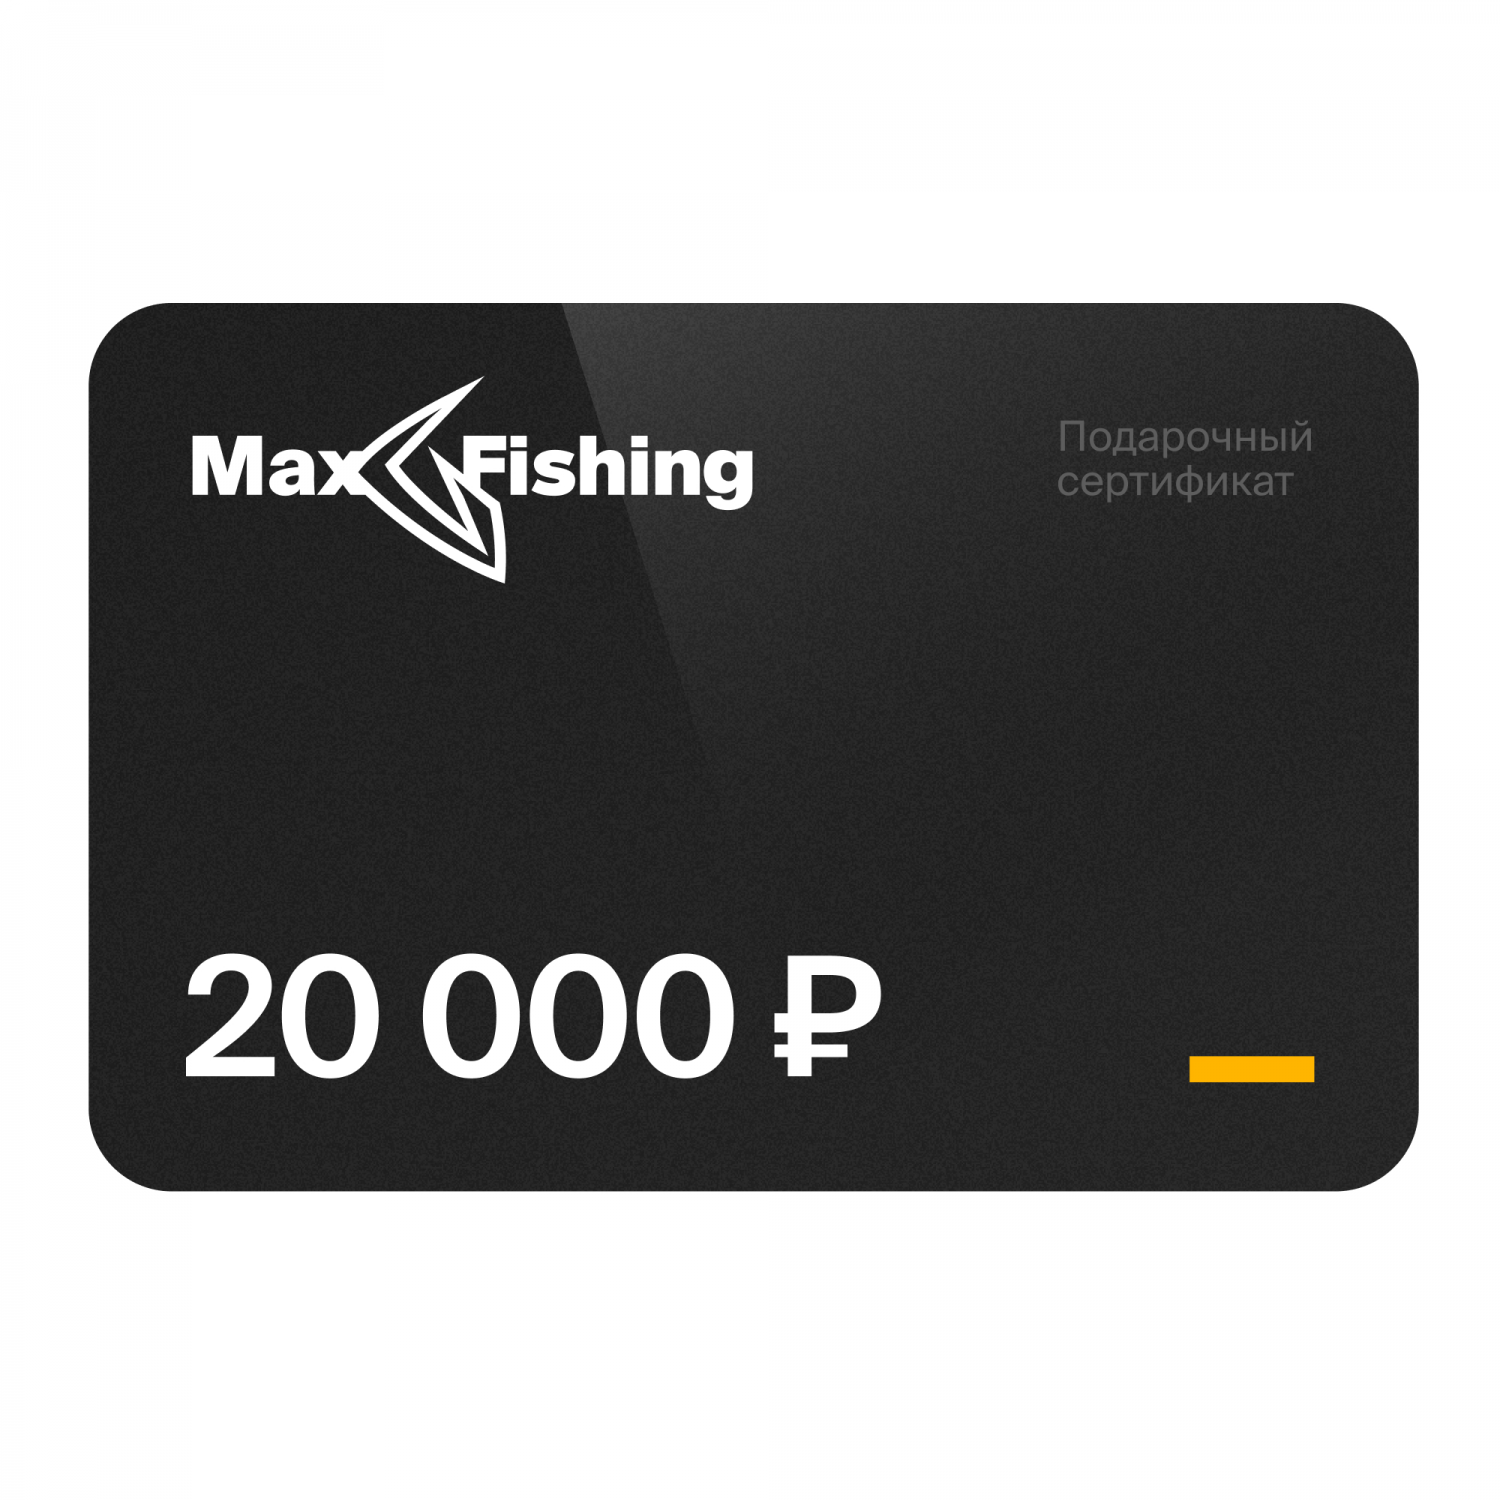 Подарочный сертификат MaxFishing 20 000 ₽ подарочный сертификат mr right на 5 000 рублей